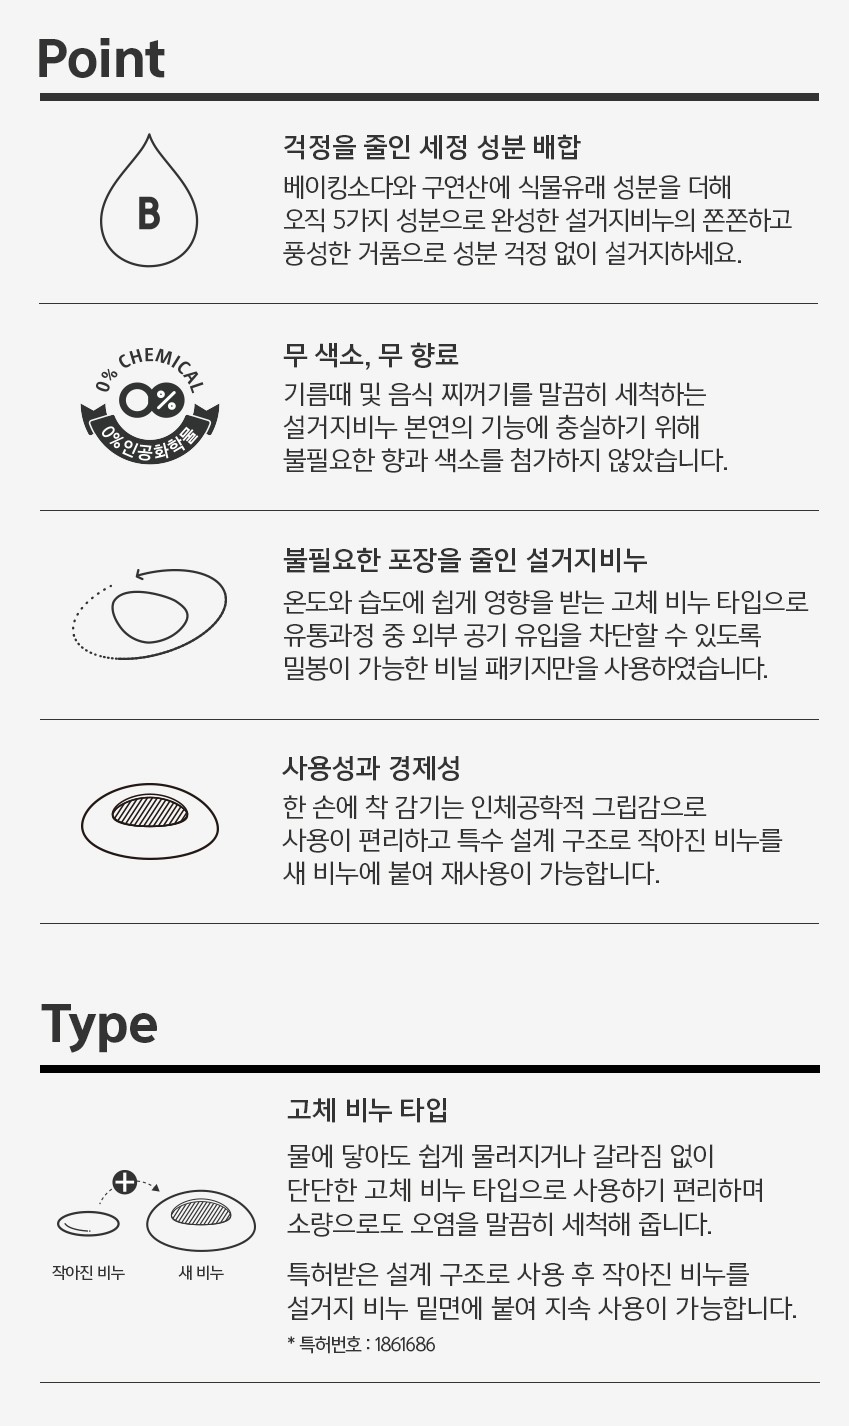 韓國食品-[레인보우샵] 베이킹소다 솝 주방비누 120g